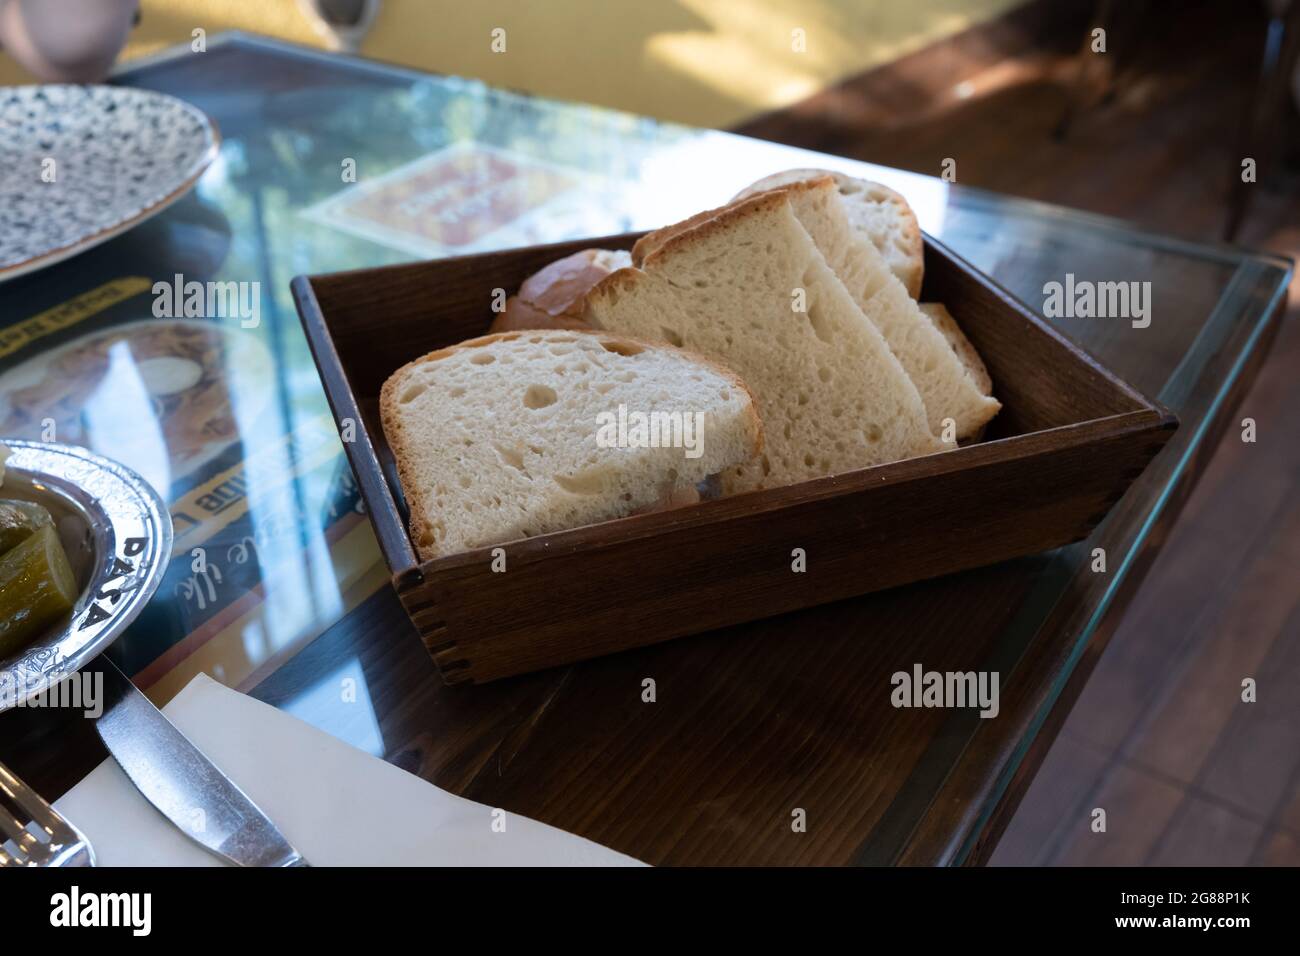 vue avant du pain dans un bol en bois sur la table Banque D'Images